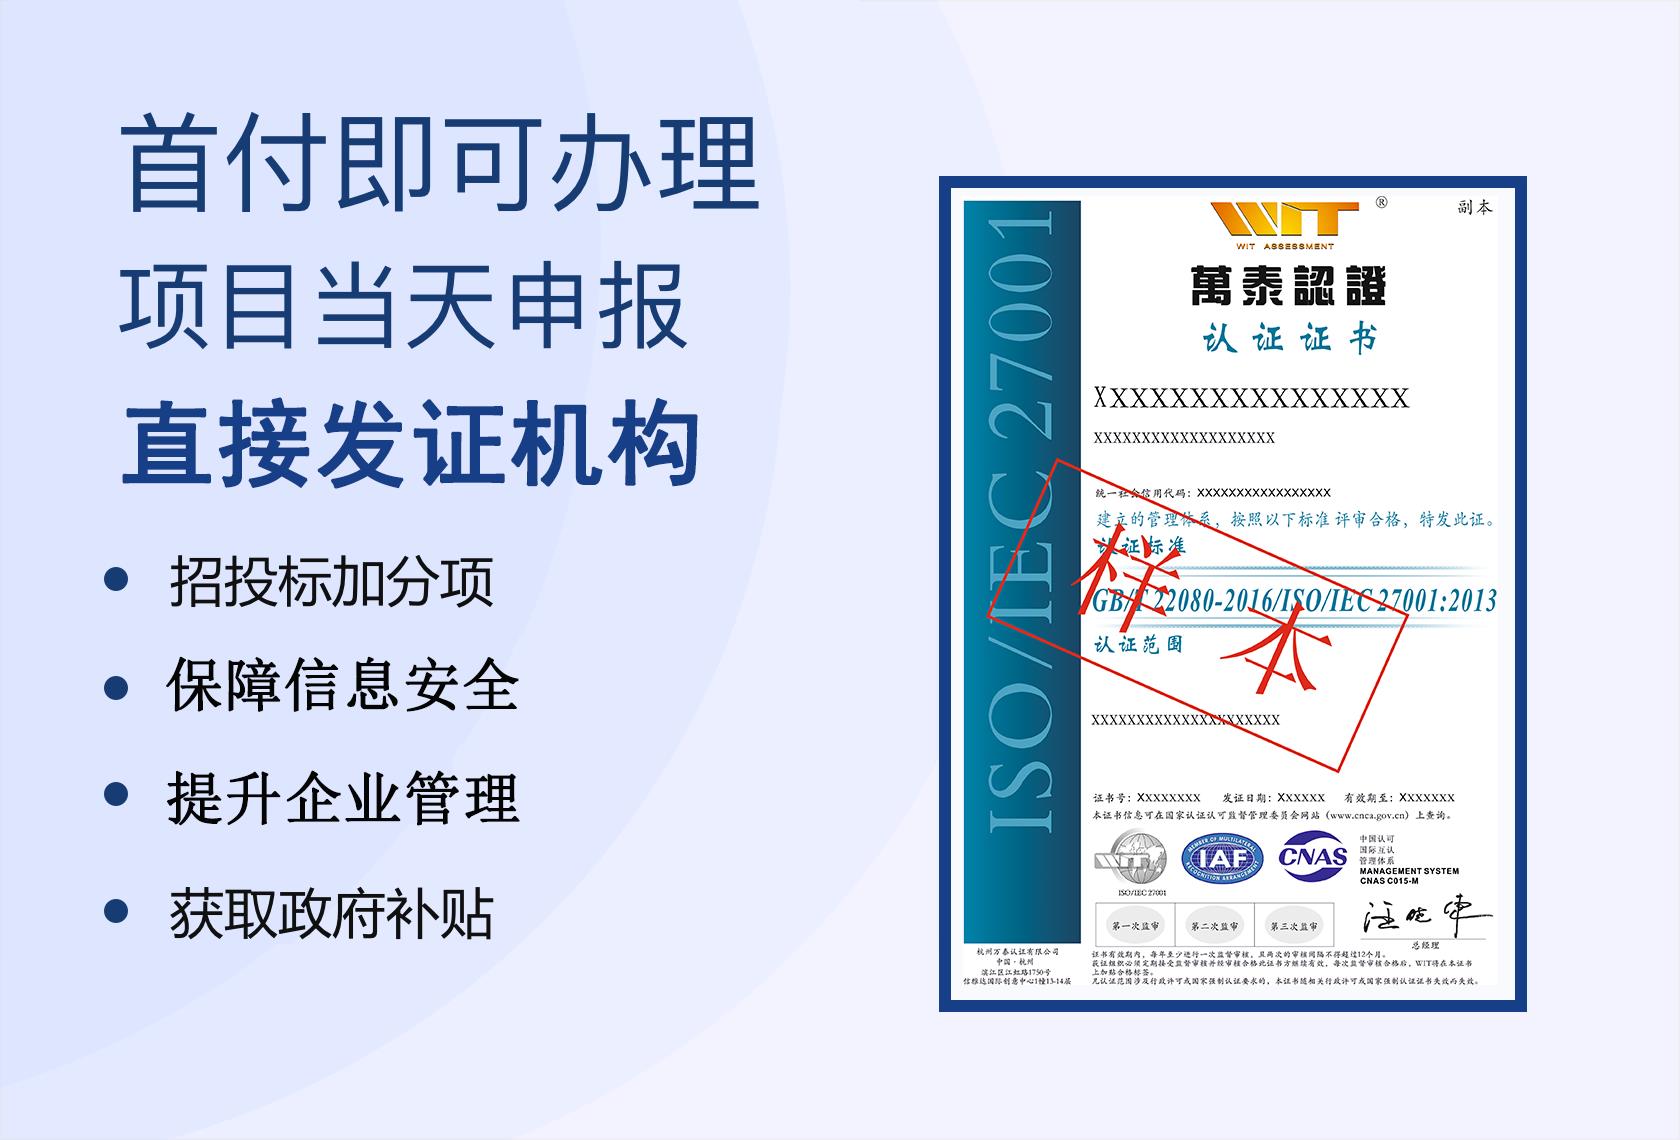 杭州万泰认证有限公司 信息安全管理体系认证介绍